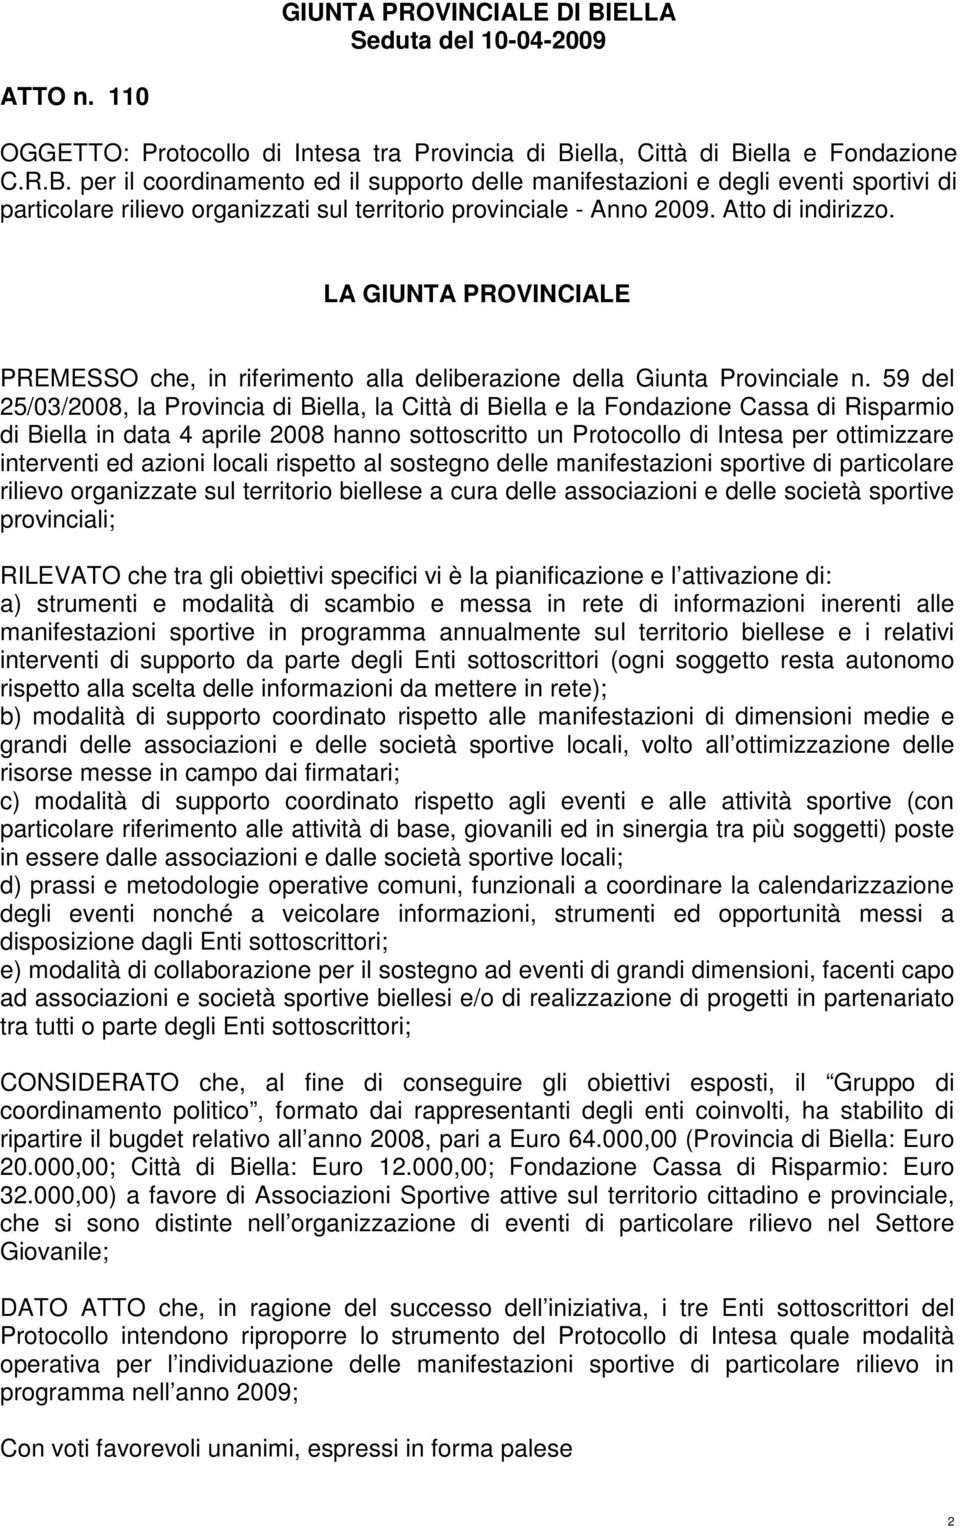 59 del 25/03/2008, la Provincia di la Città di Biella e la Fondazione Cassa di Risparmio di Biella in data 4 aprile 2008 hanno sottoscritto un Protocollo di Intesa per ottimizzare interventi ed